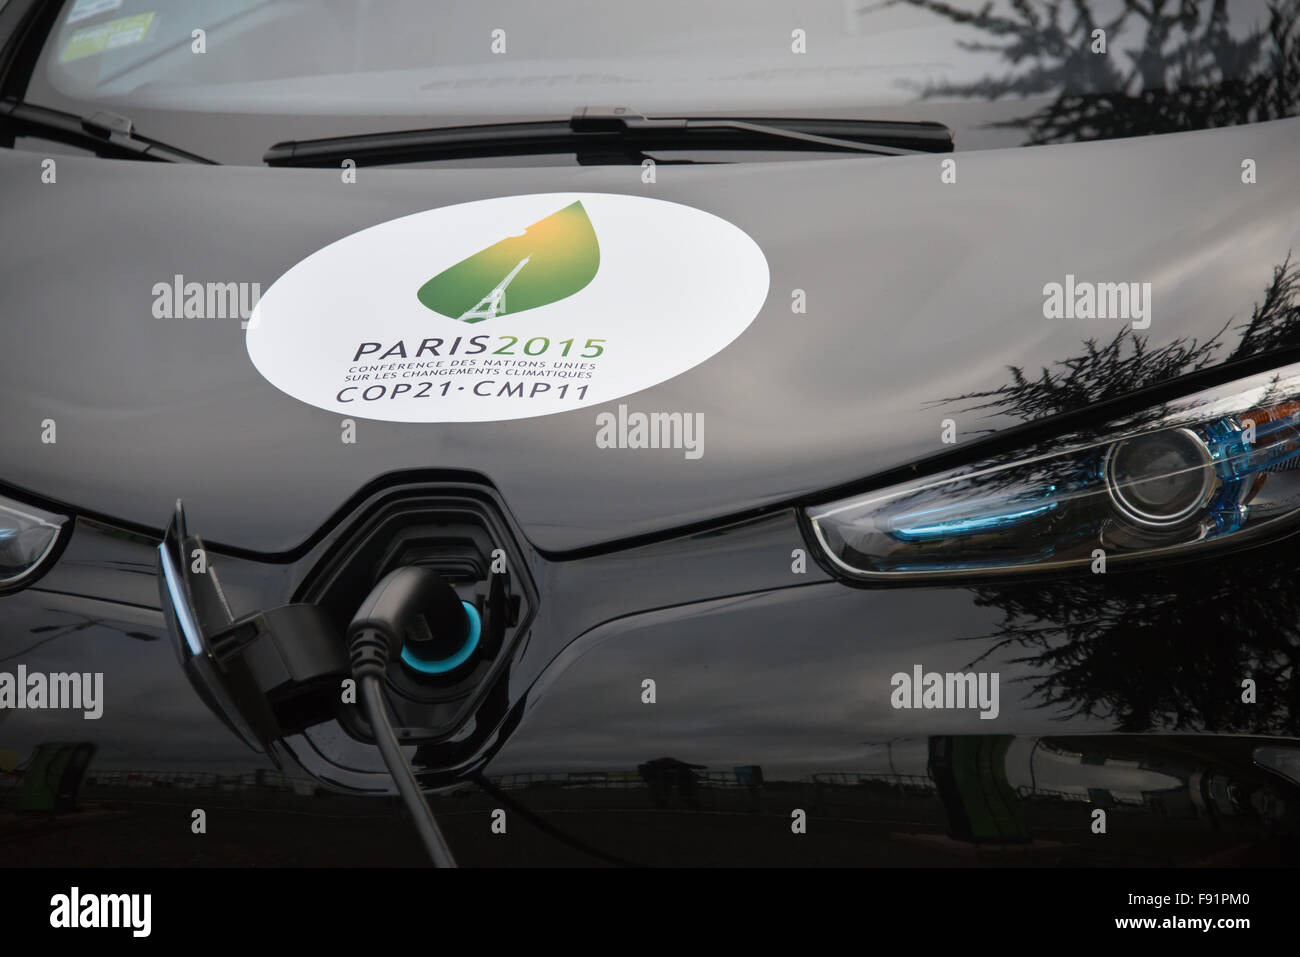 Une flotte de voitures électriques à l'avant frais de la COP21 conférence des Nations Unies sur le climat au Bourget près de Paris, France, le 30 novembre 2015. Banque D'Images